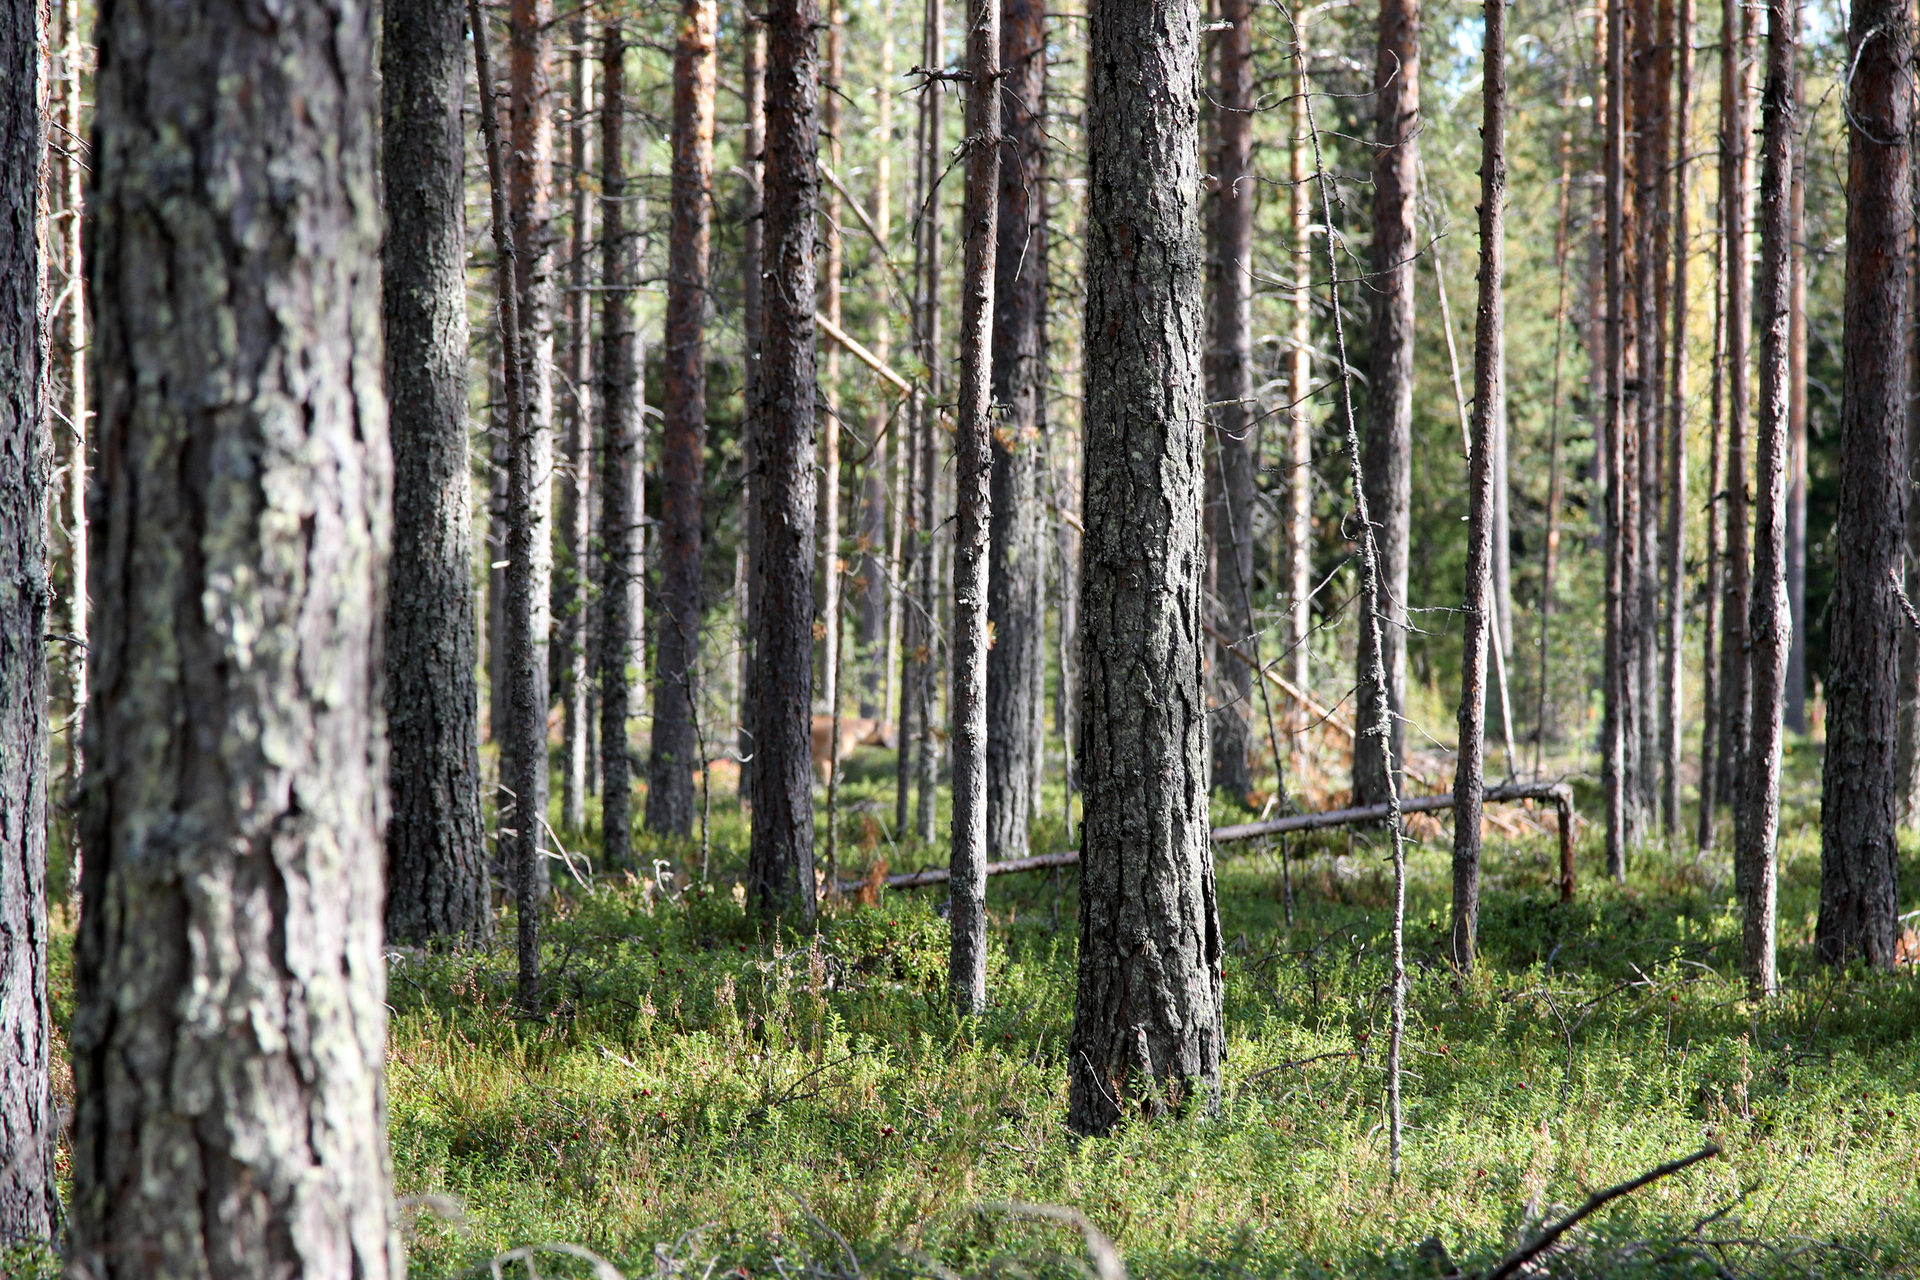 Fotografia z lewej przedstawia wnętrze boru sosnowego. Liczne cieńsze i grubsze pnie drzew, jeden złamany. Między nimi połacie nasłonecznionego runa leśnego.